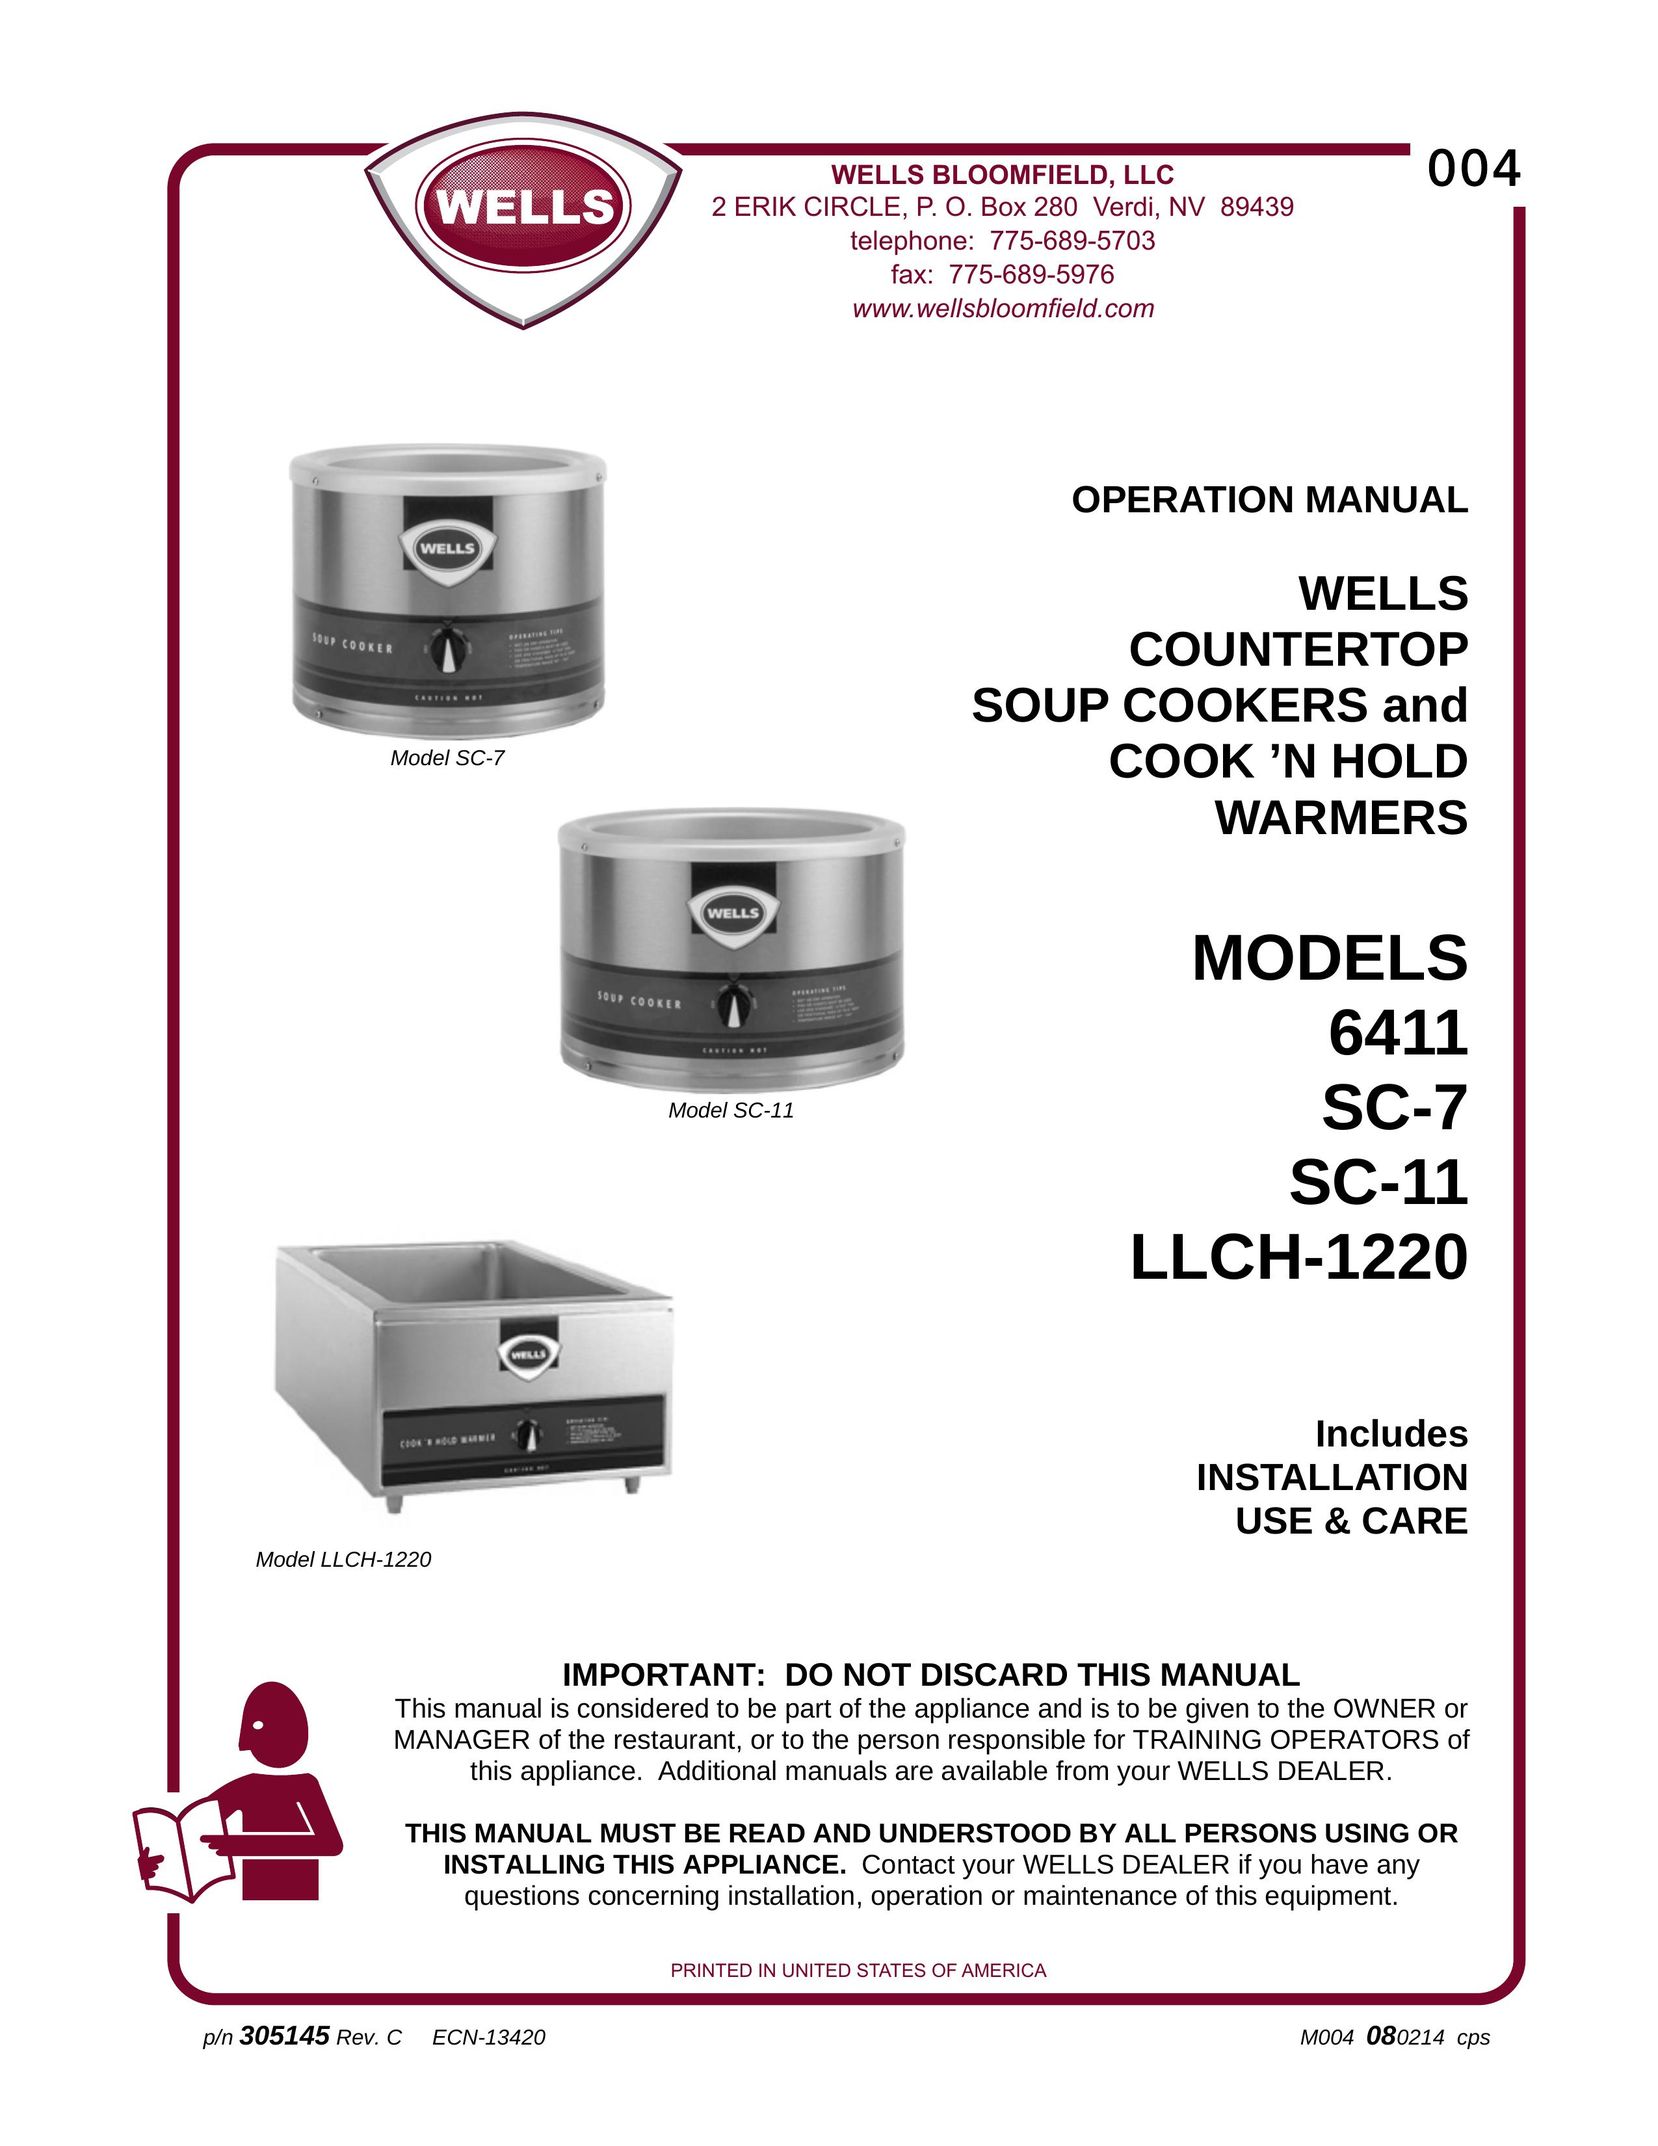 Wells LLCH-1220 Cooktop User Manual